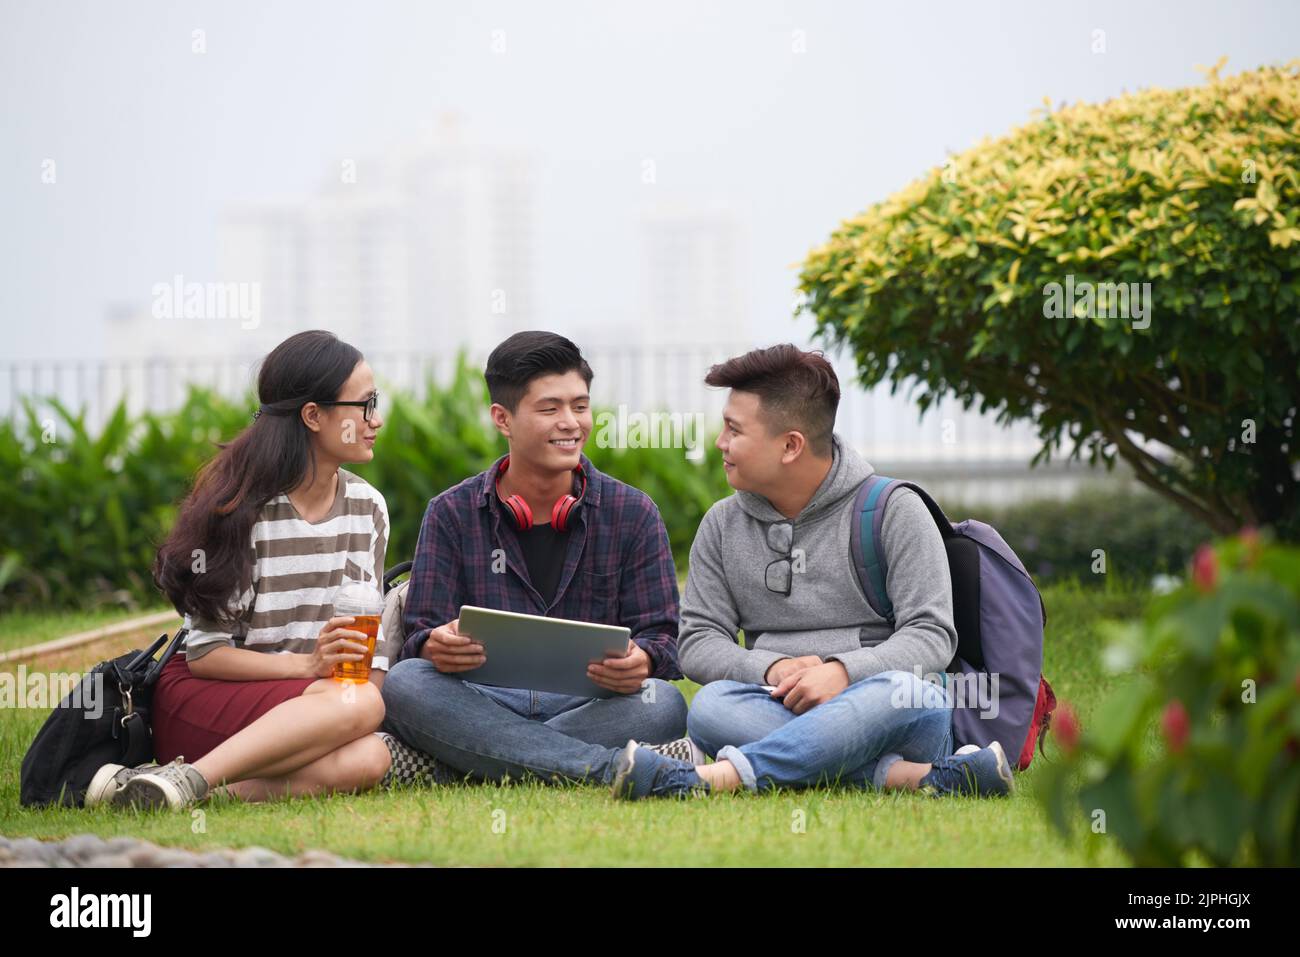 Un groupe d'étudiants asiatiques en vêtements décontractés se sont réunis dans un parc public vert pour se préparer à l'examen avec l'aide d'une tablette numérique moderne Banque D'Images